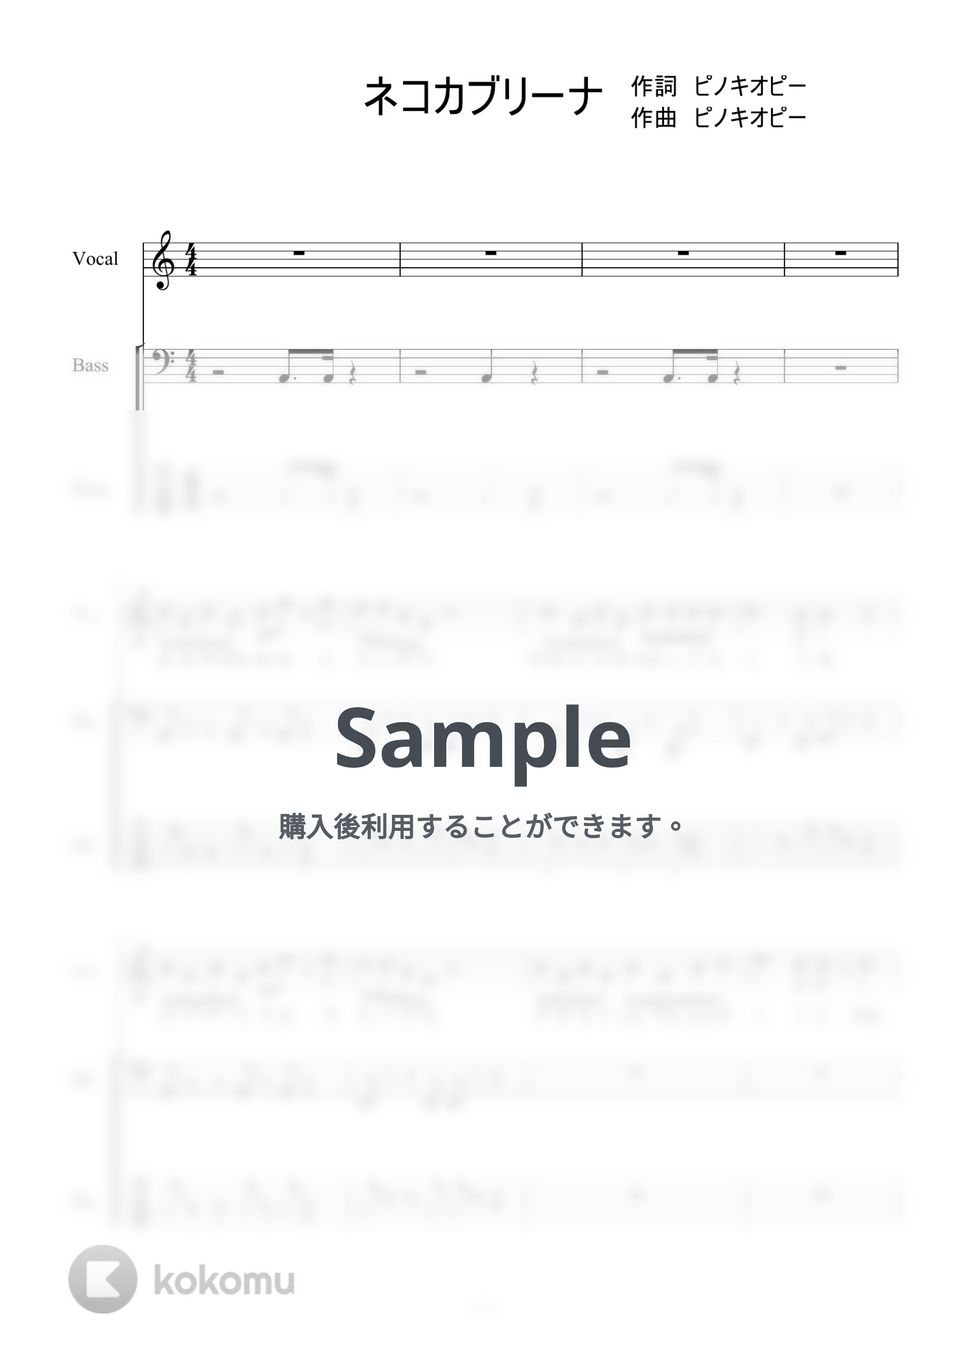 猫又おかゆ - ネコカブリーナ (※５弦ベース) by 二次元楽譜製作所